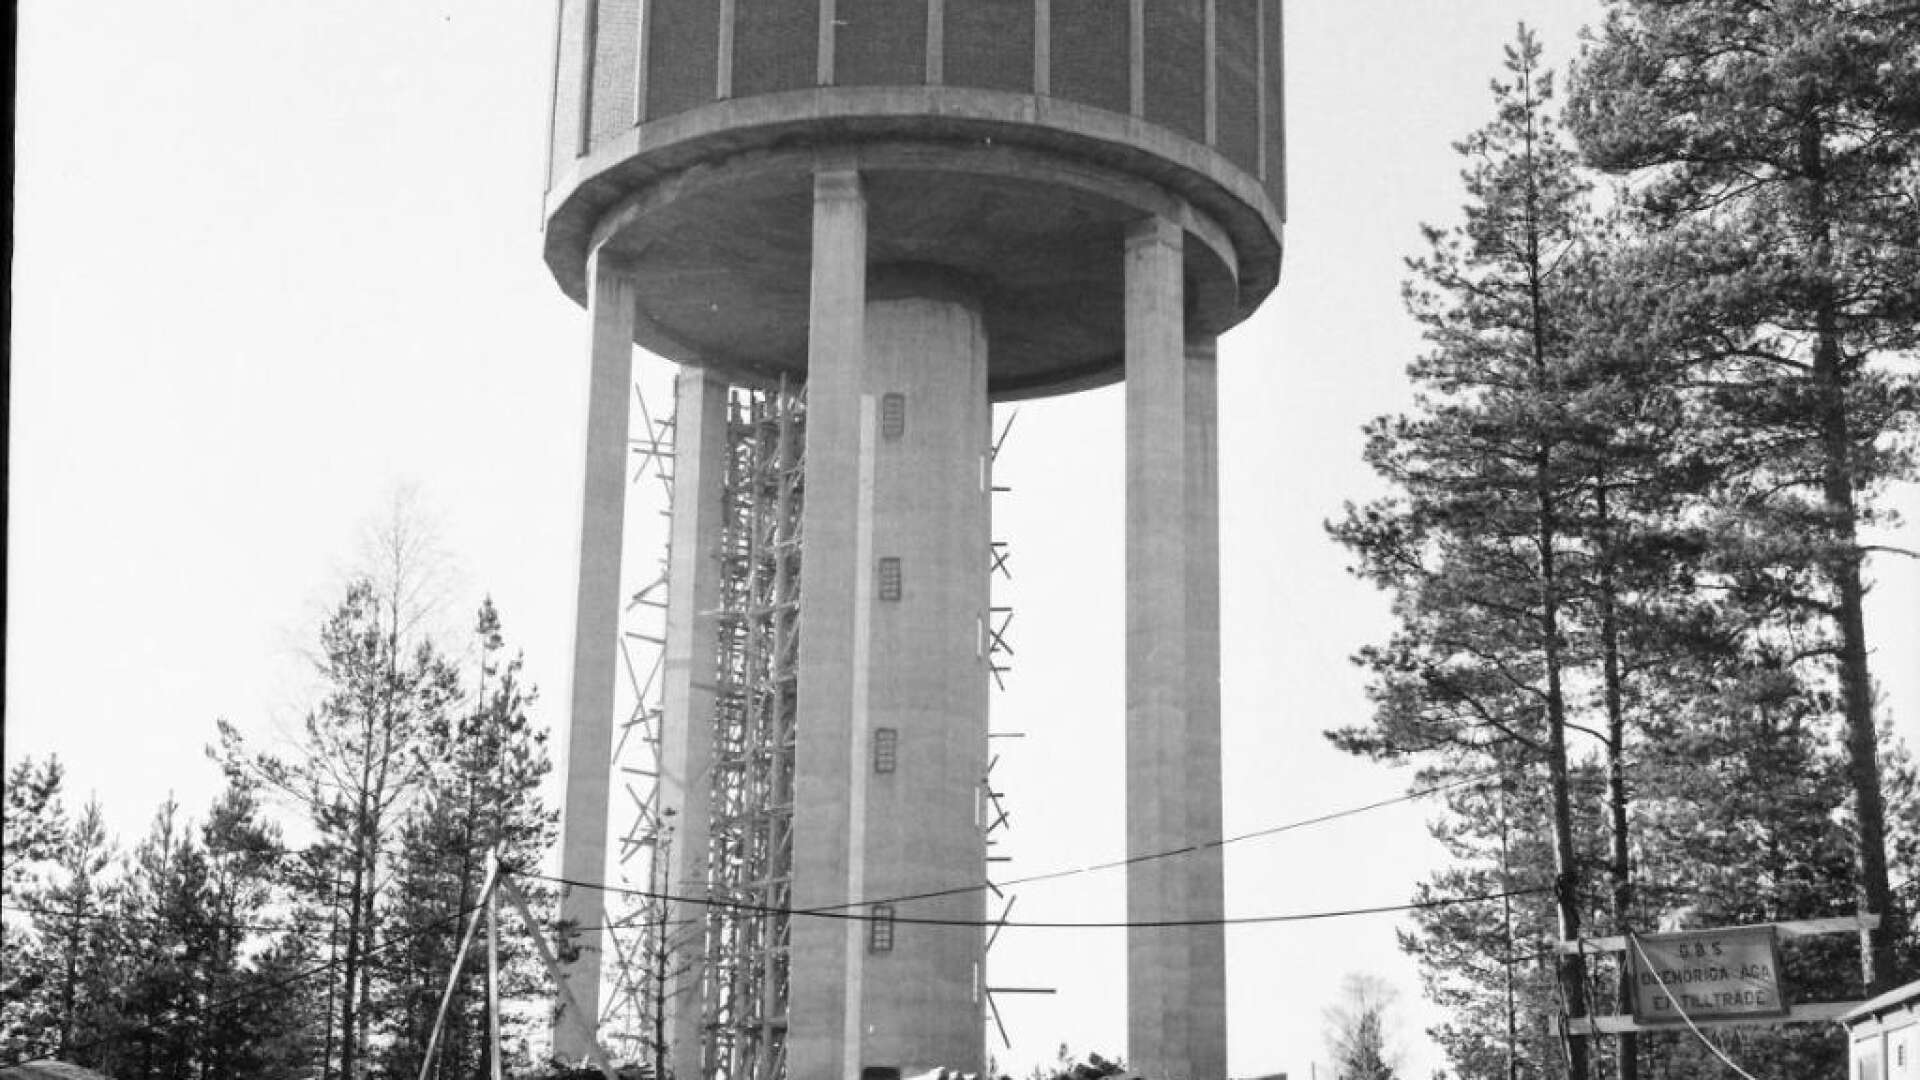 Vattentornet är på plats och bara en liten del av träkonstruktionen som omgett bygget återstår att riva. Det är en bit in på 1959 och snart skall reservoaren fyllas för första gången.